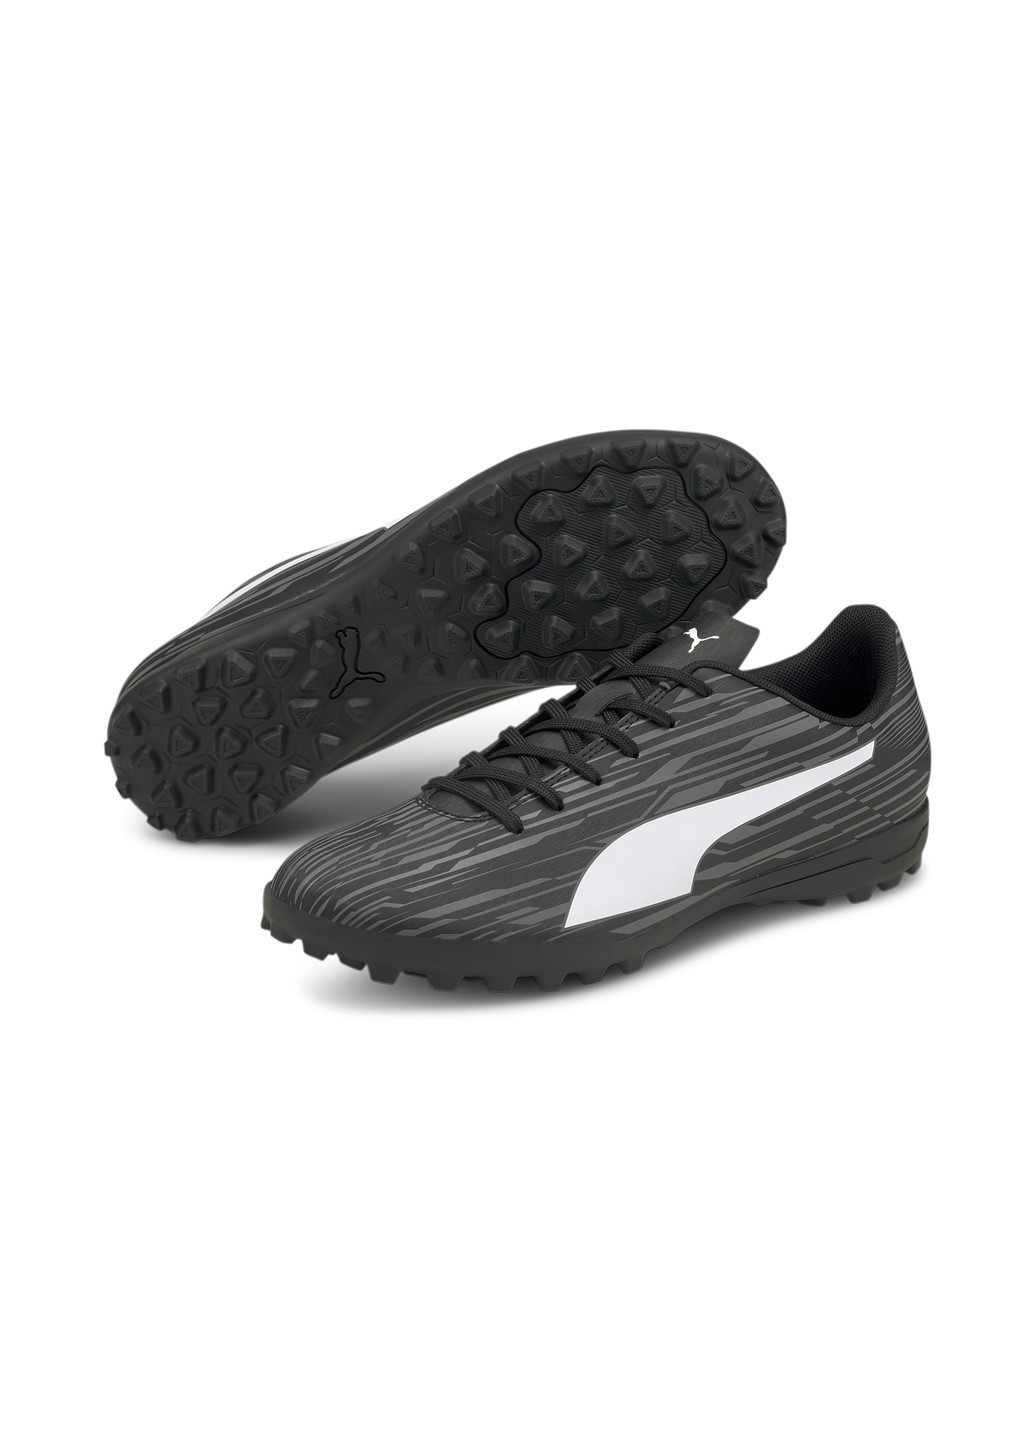 Бутси Rapido III TT Men's Football Boots Puma однотонні чорні спортивні